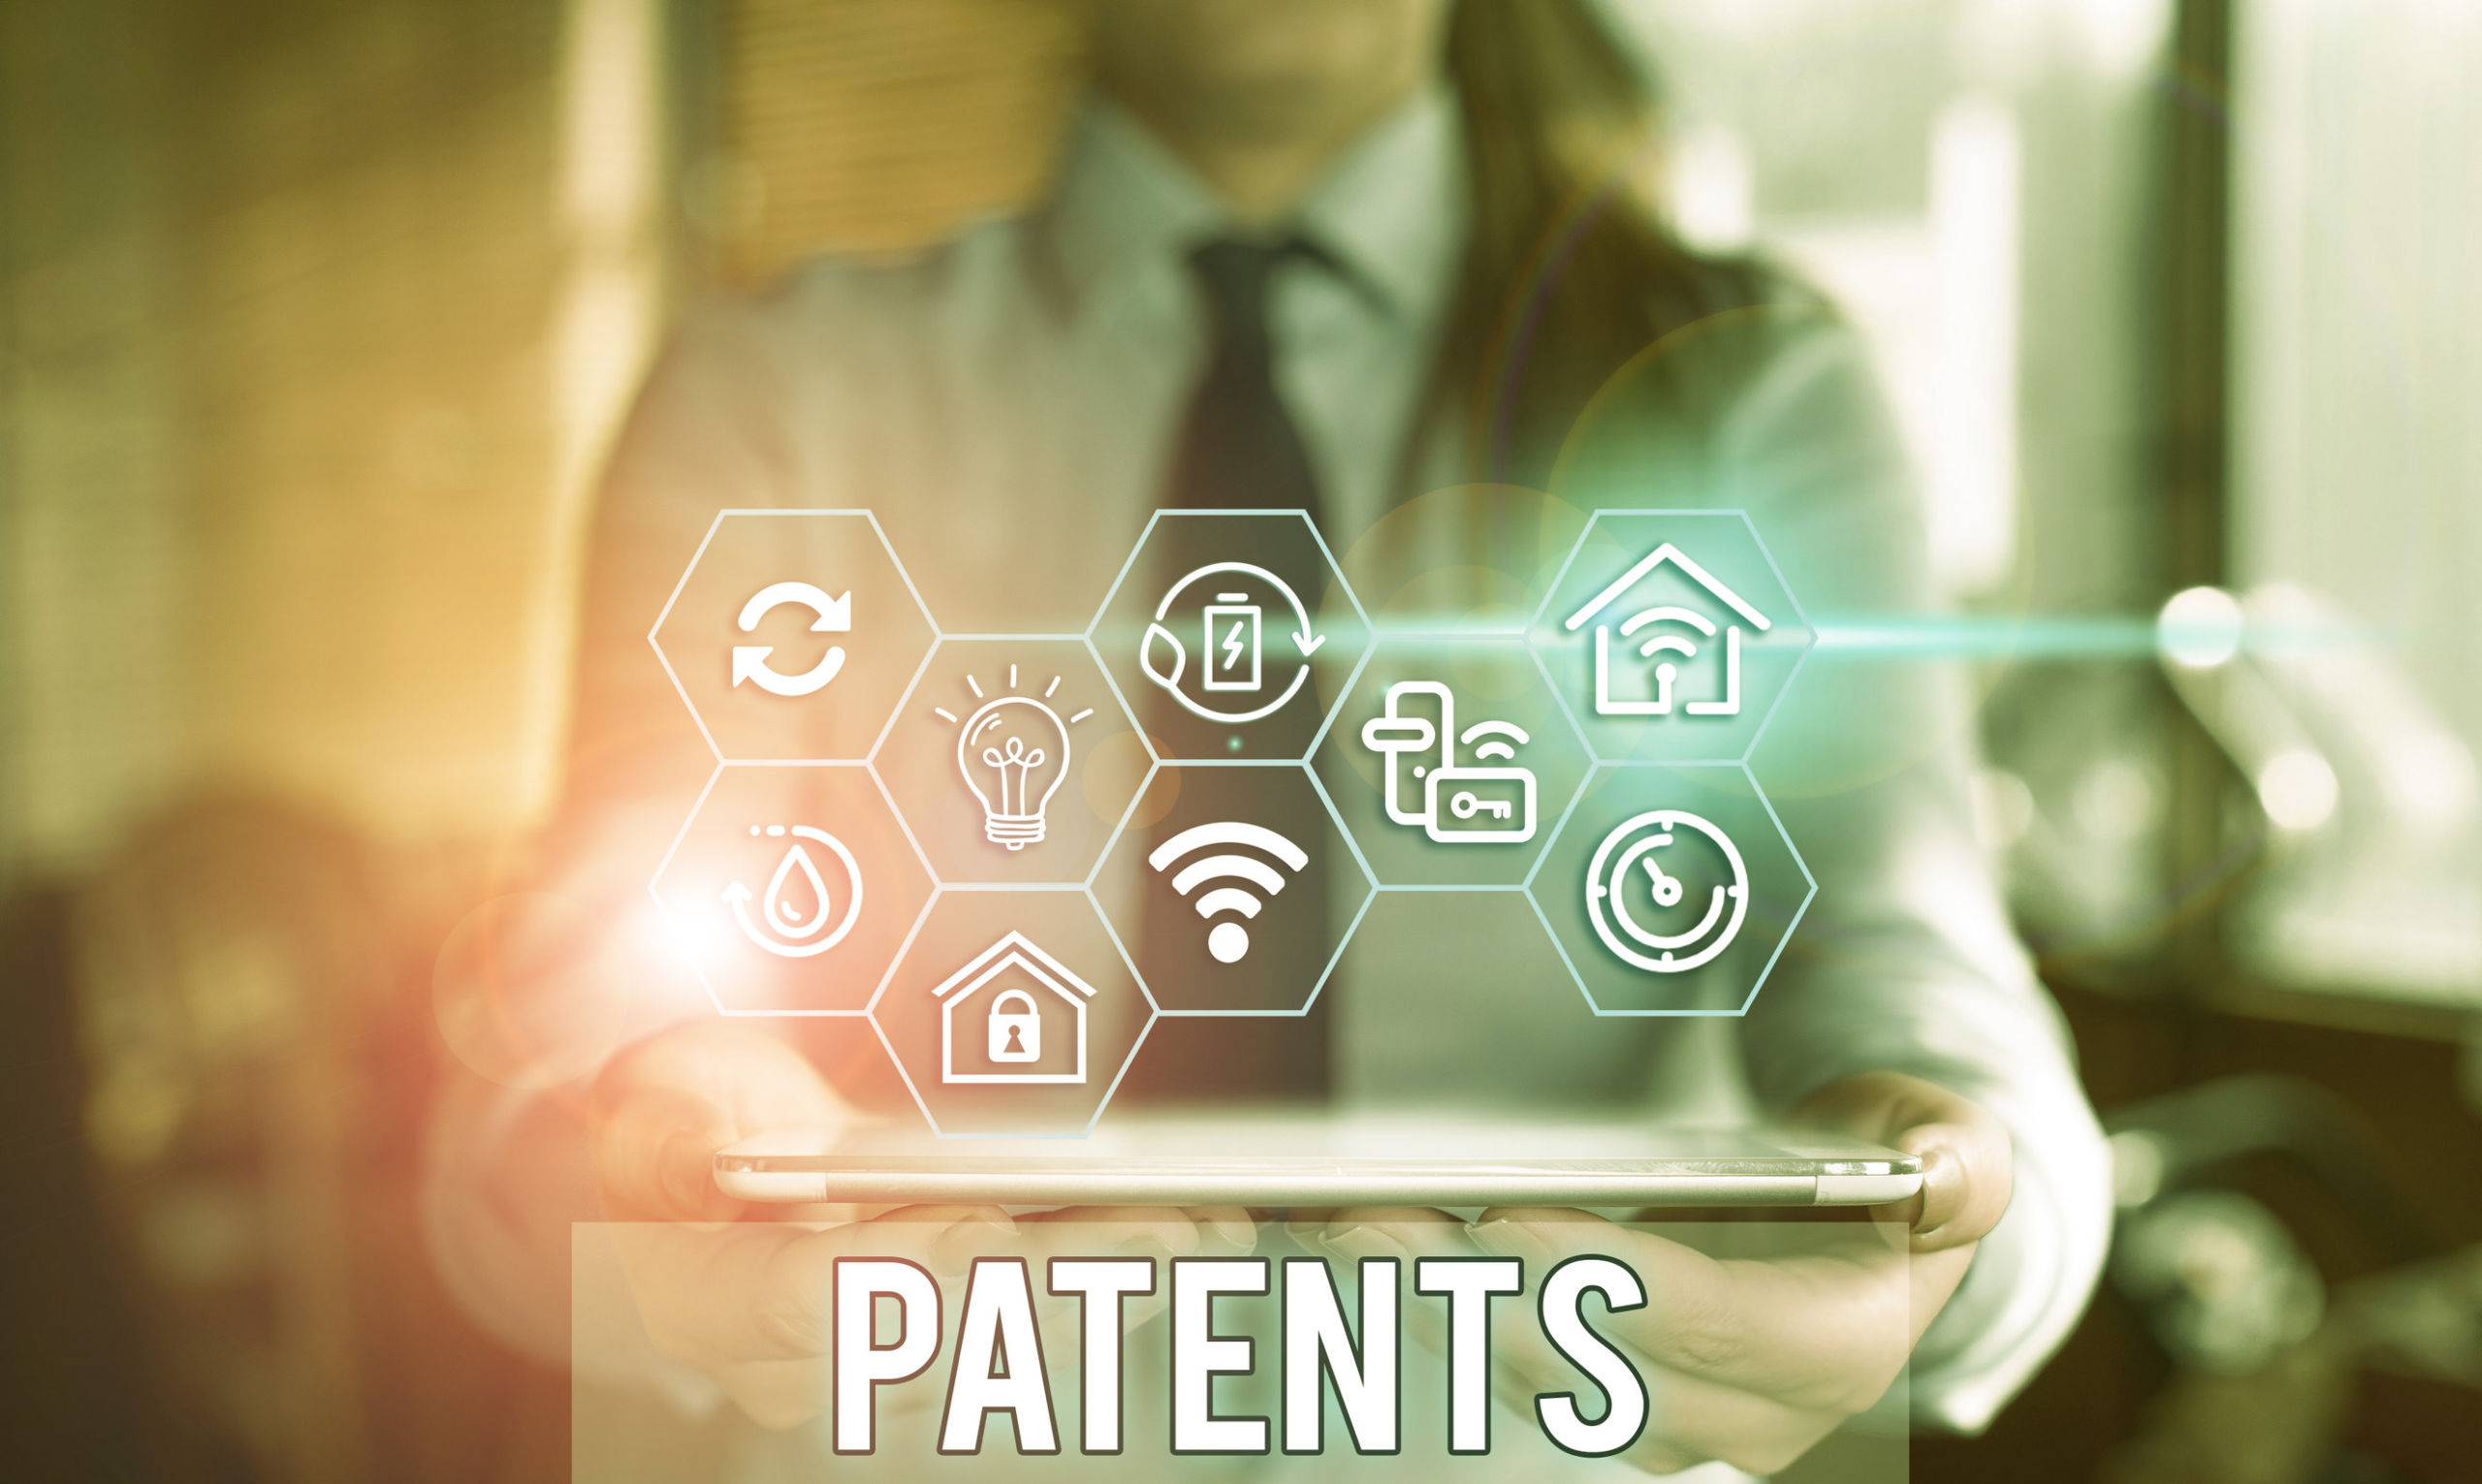 patent monetization,patent,cle